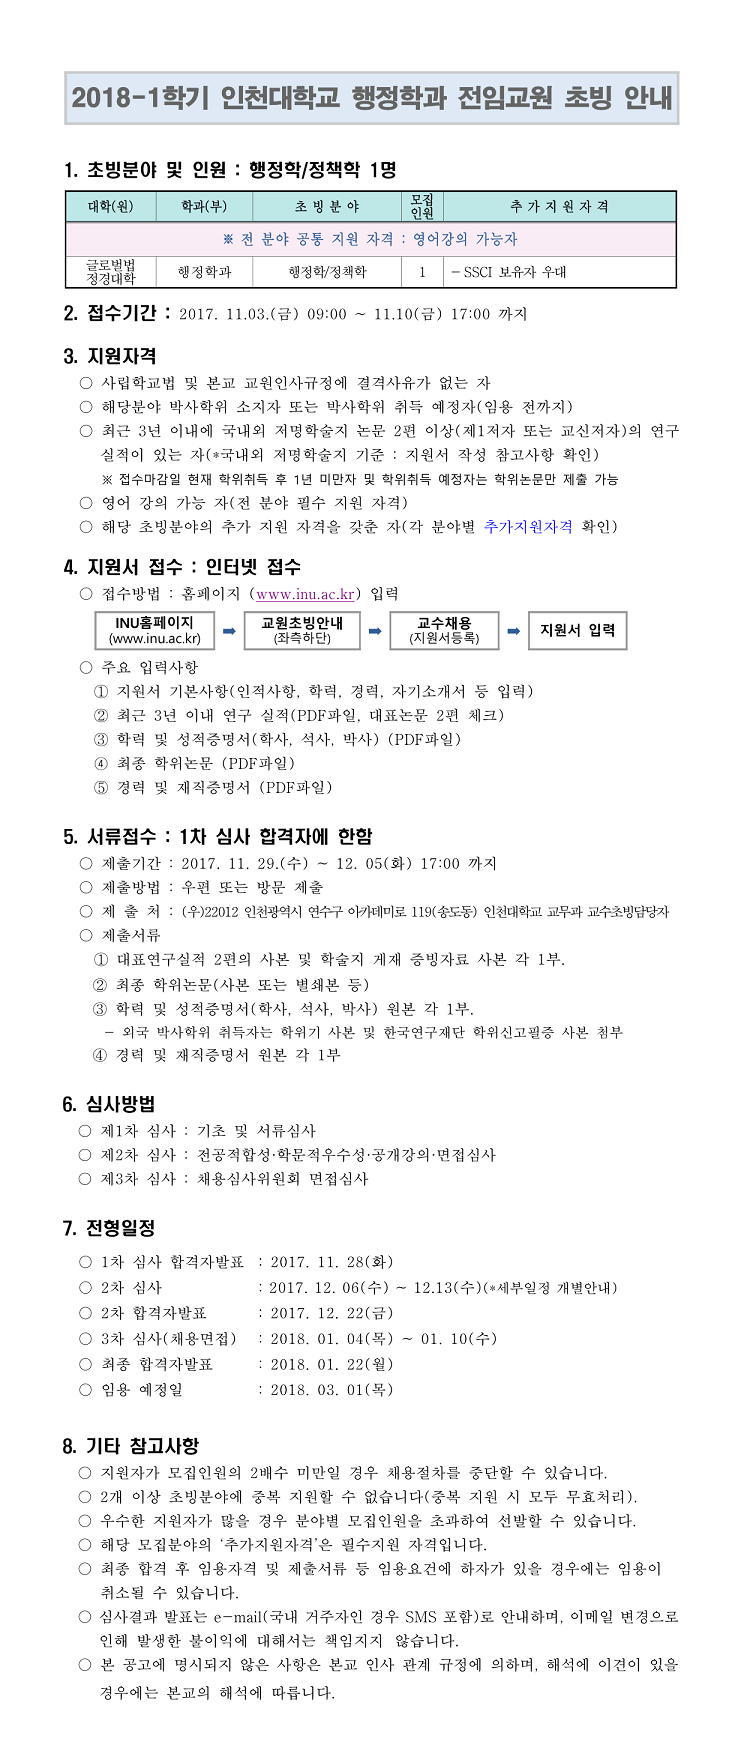 2018-1학기 전임교원 초빙공고(행정학과)_게시용-1.jpg